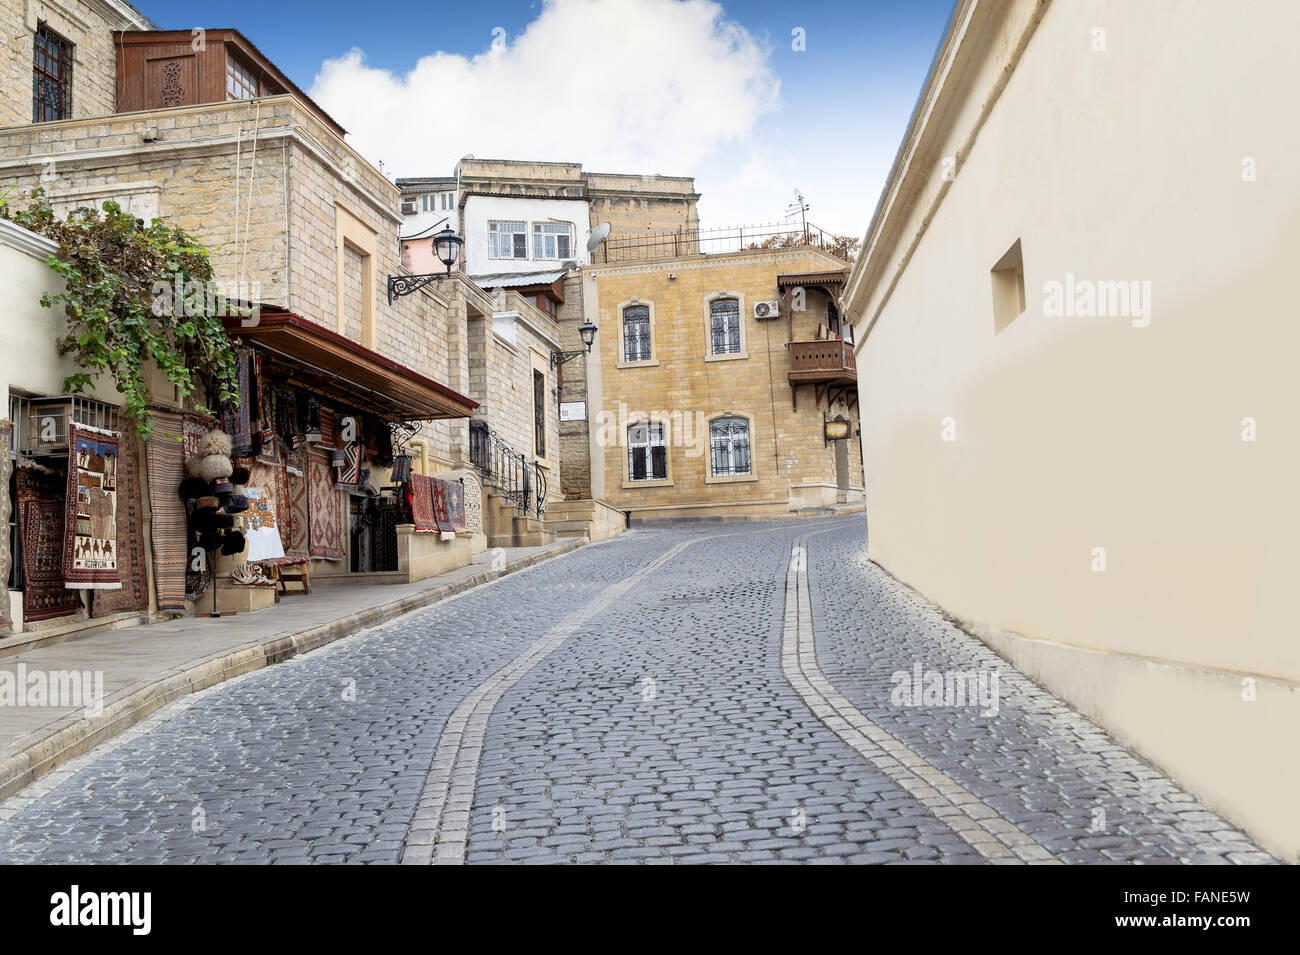 Une vue sur la rue à l'ancienne ville de Bakou, Azerbaïdjan. Centre-ville (azerbaïdjanais iceri sehir) est le coeur historique de Bakou. Classé. Banque D'Images